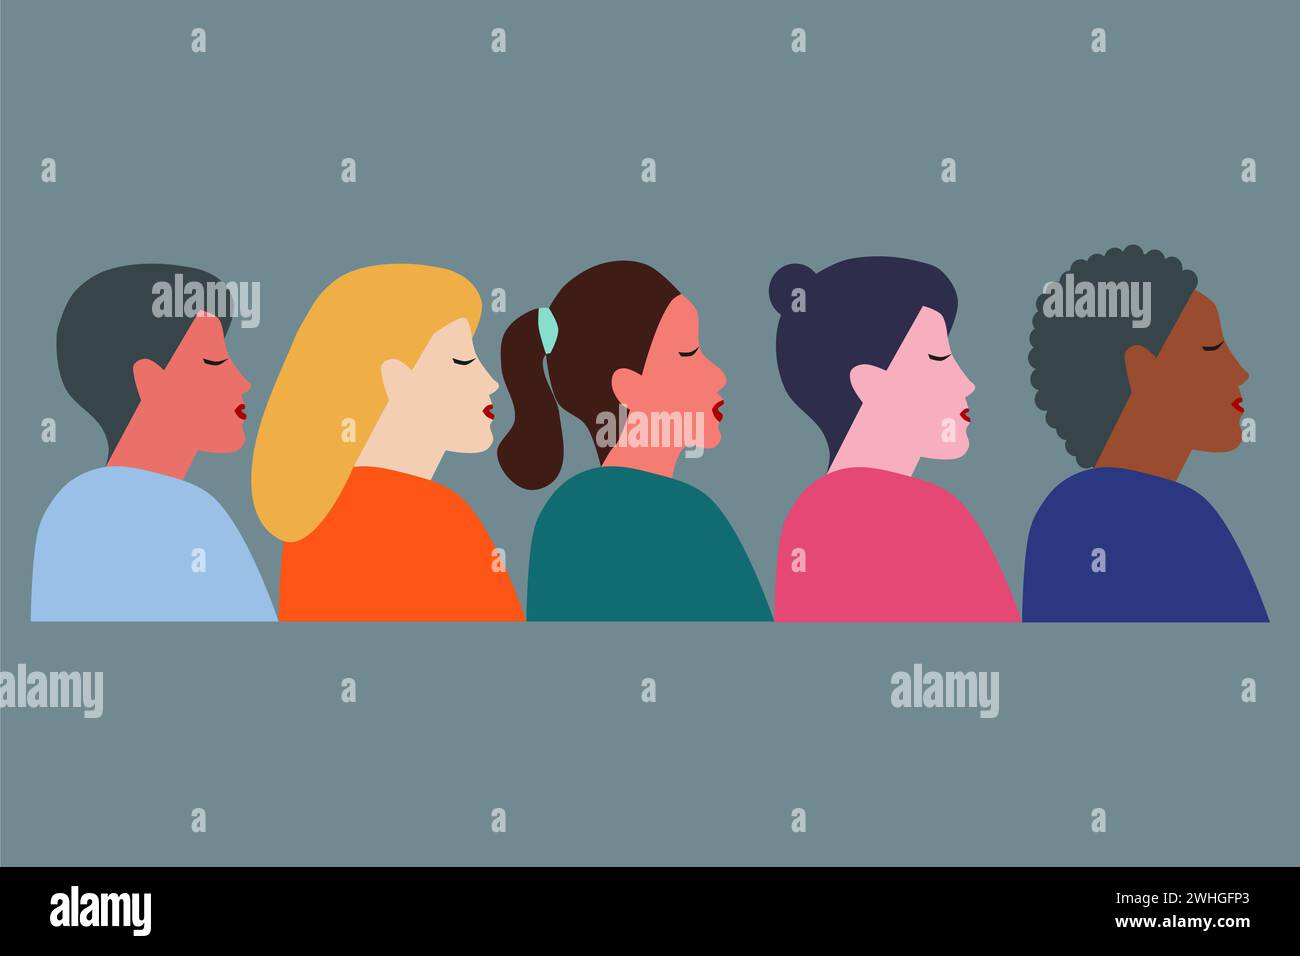 Gruppo di donne con diverse nazionalità e culture che si uniscono. Banner per la giornata internazionale della donna. Illustrazione vettoriale. Illustrazione Vettoriale